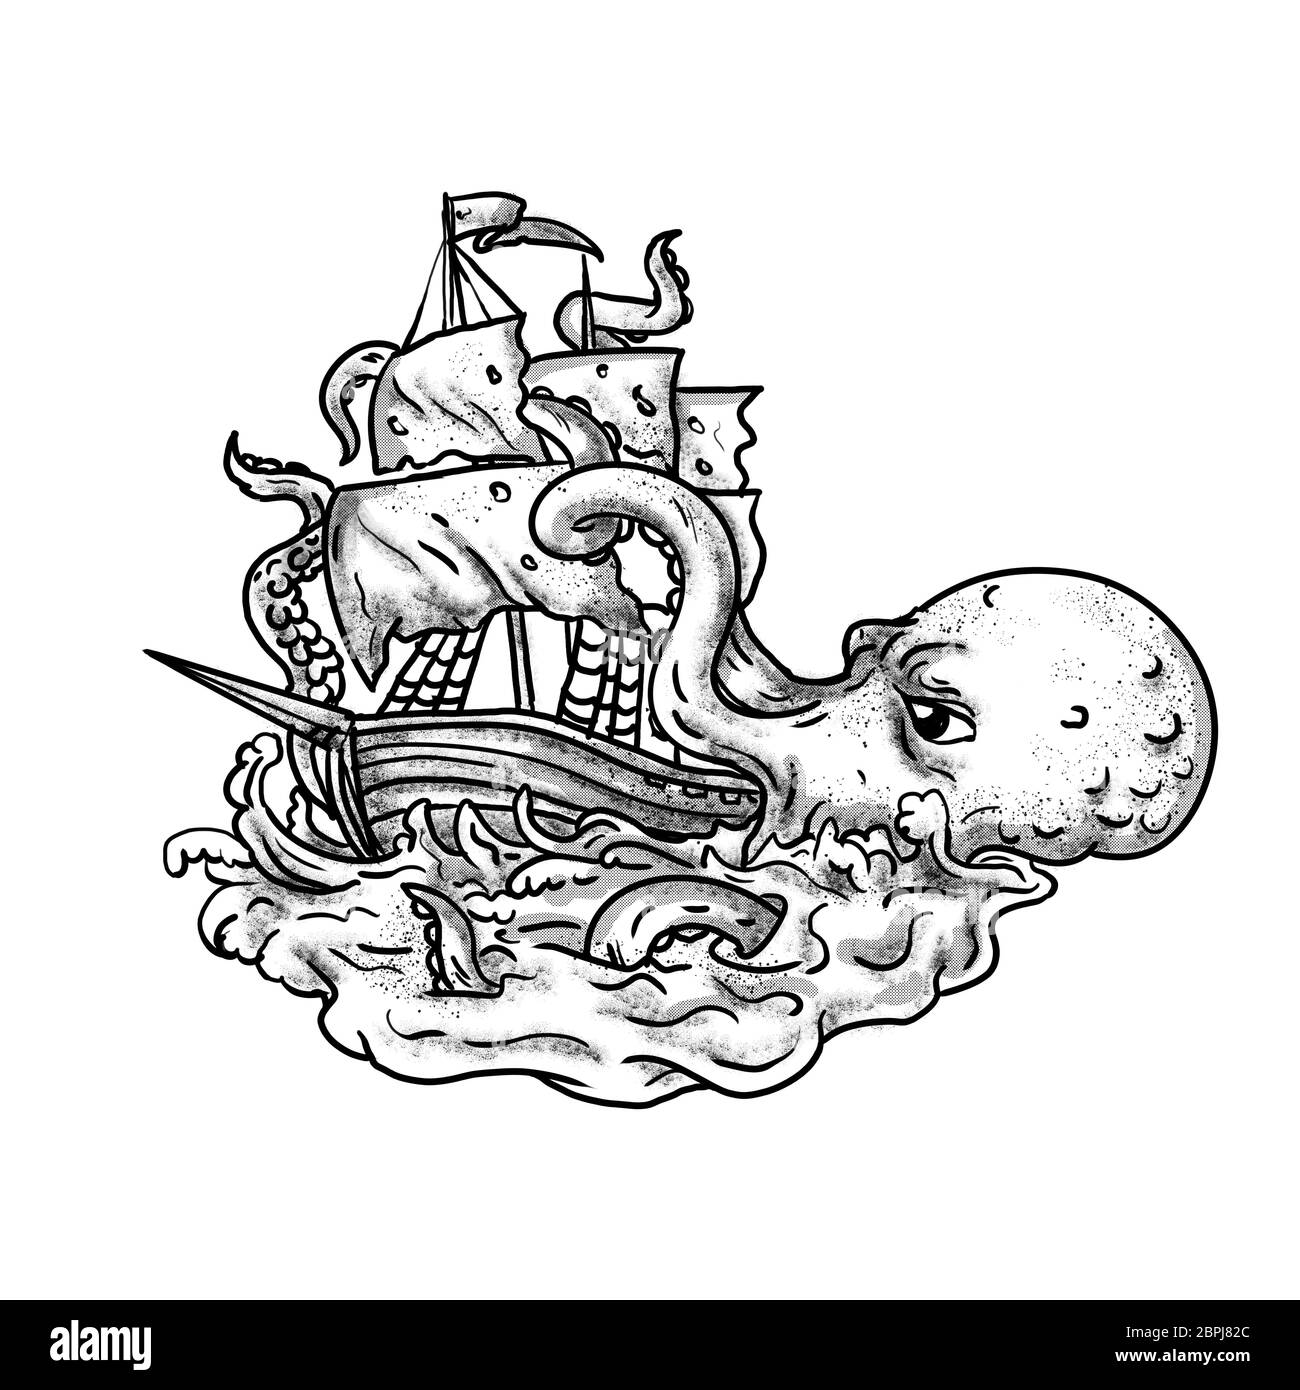 kraken illustration